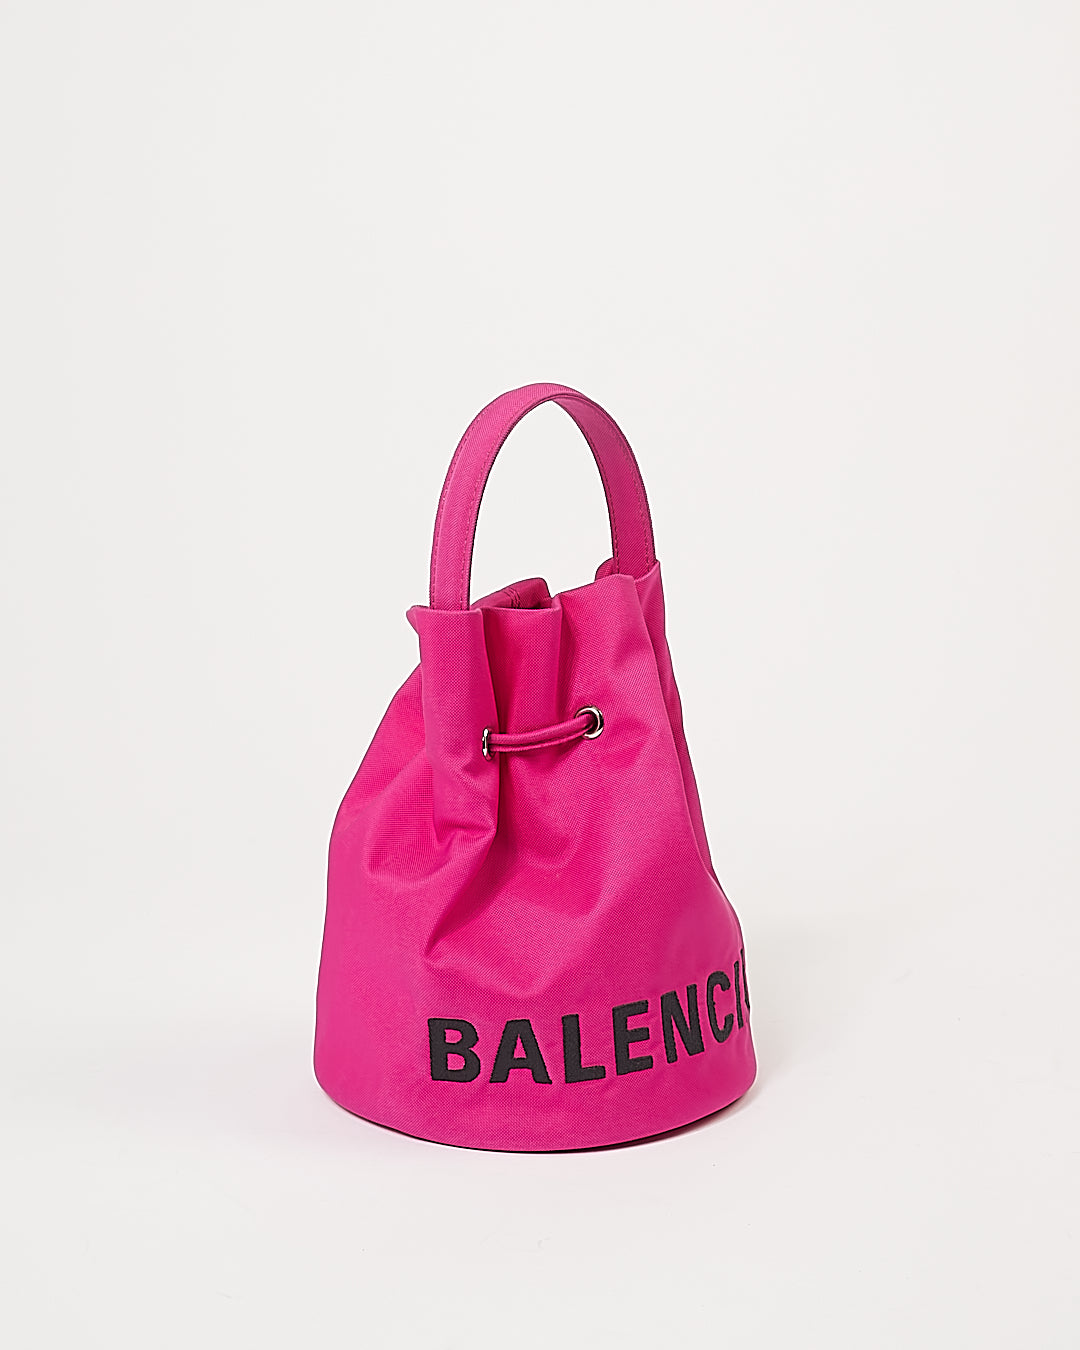 Balenciaga Sac seau à roue avec mini logo rose fuchsia